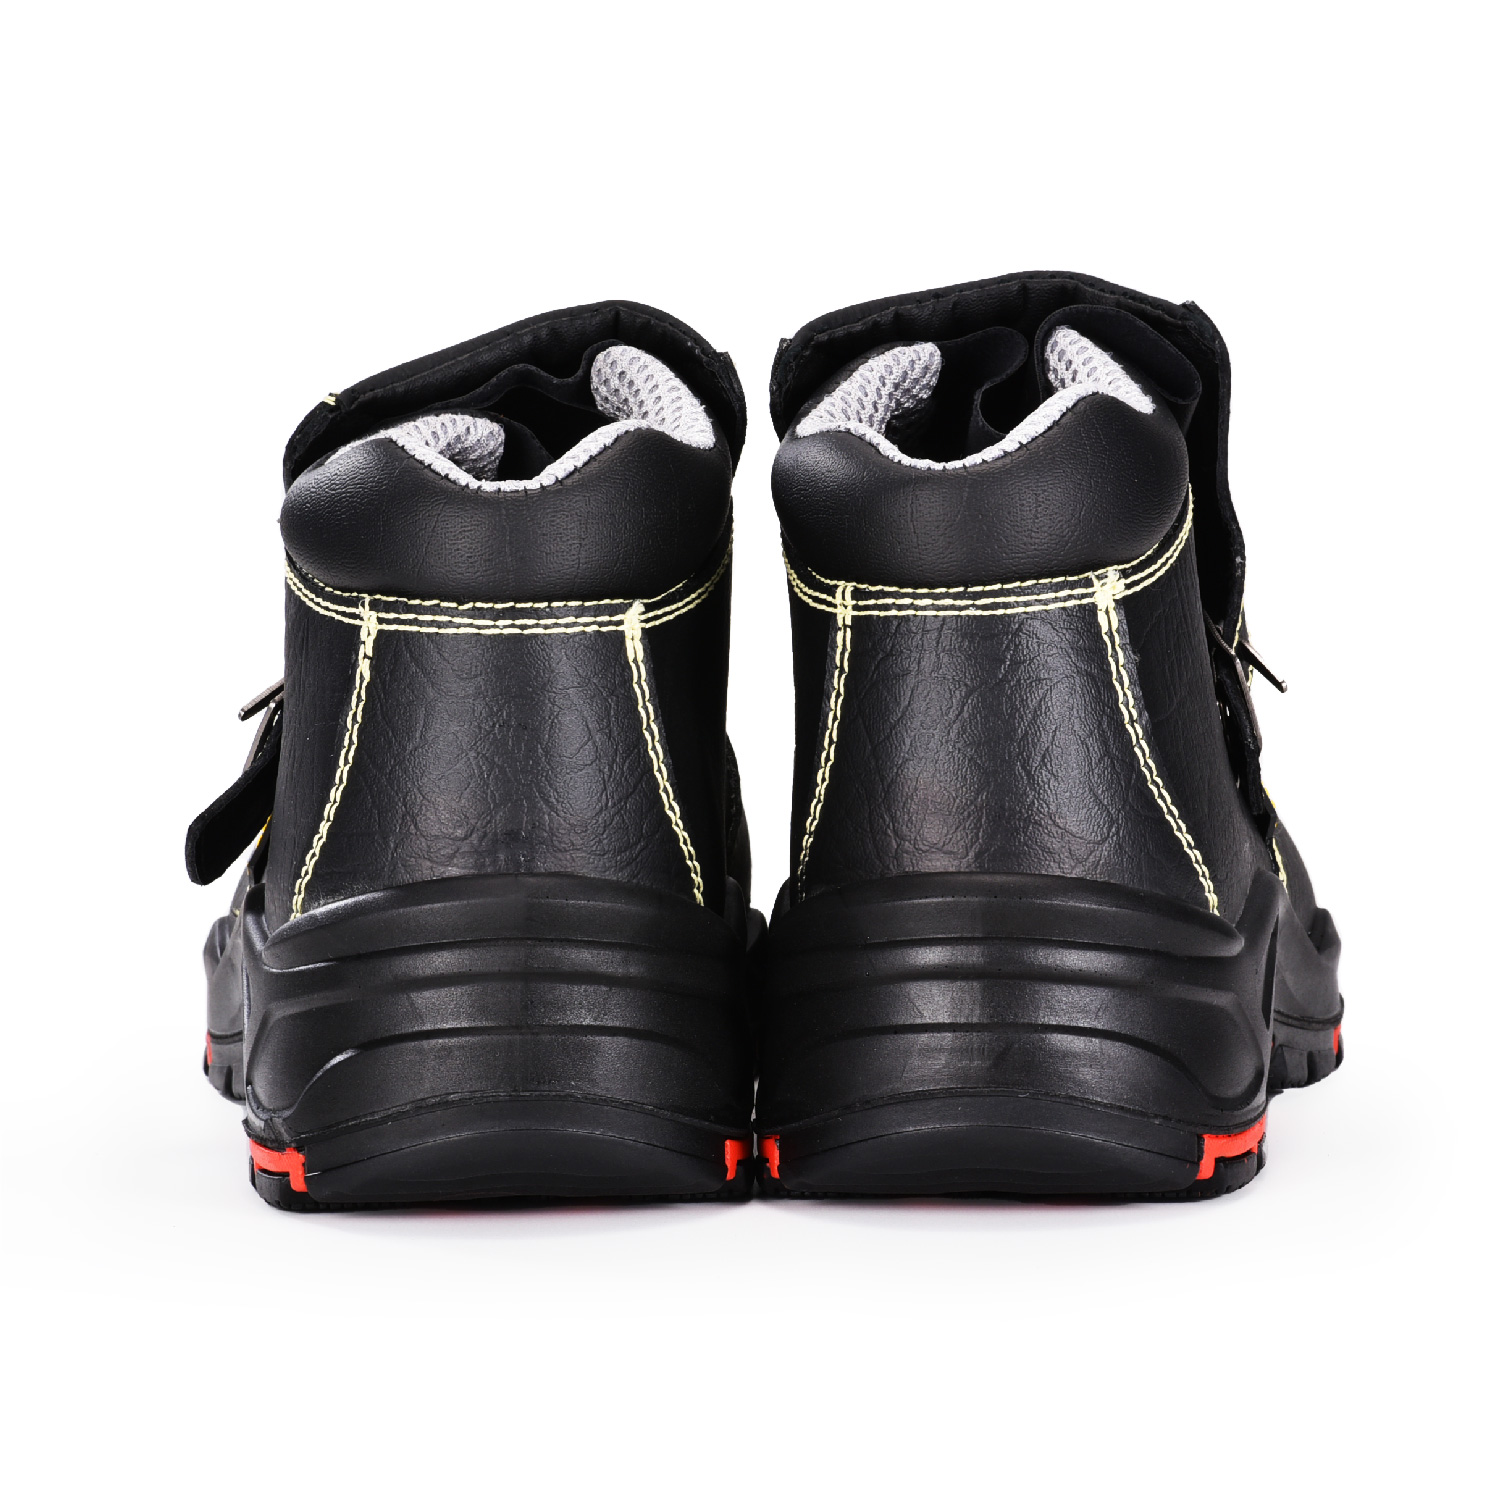 Stivali da saldatura di sicurezza neri resistenti con punta in composito e piastra in Kevlar M-8387 Copricapo Nuovo